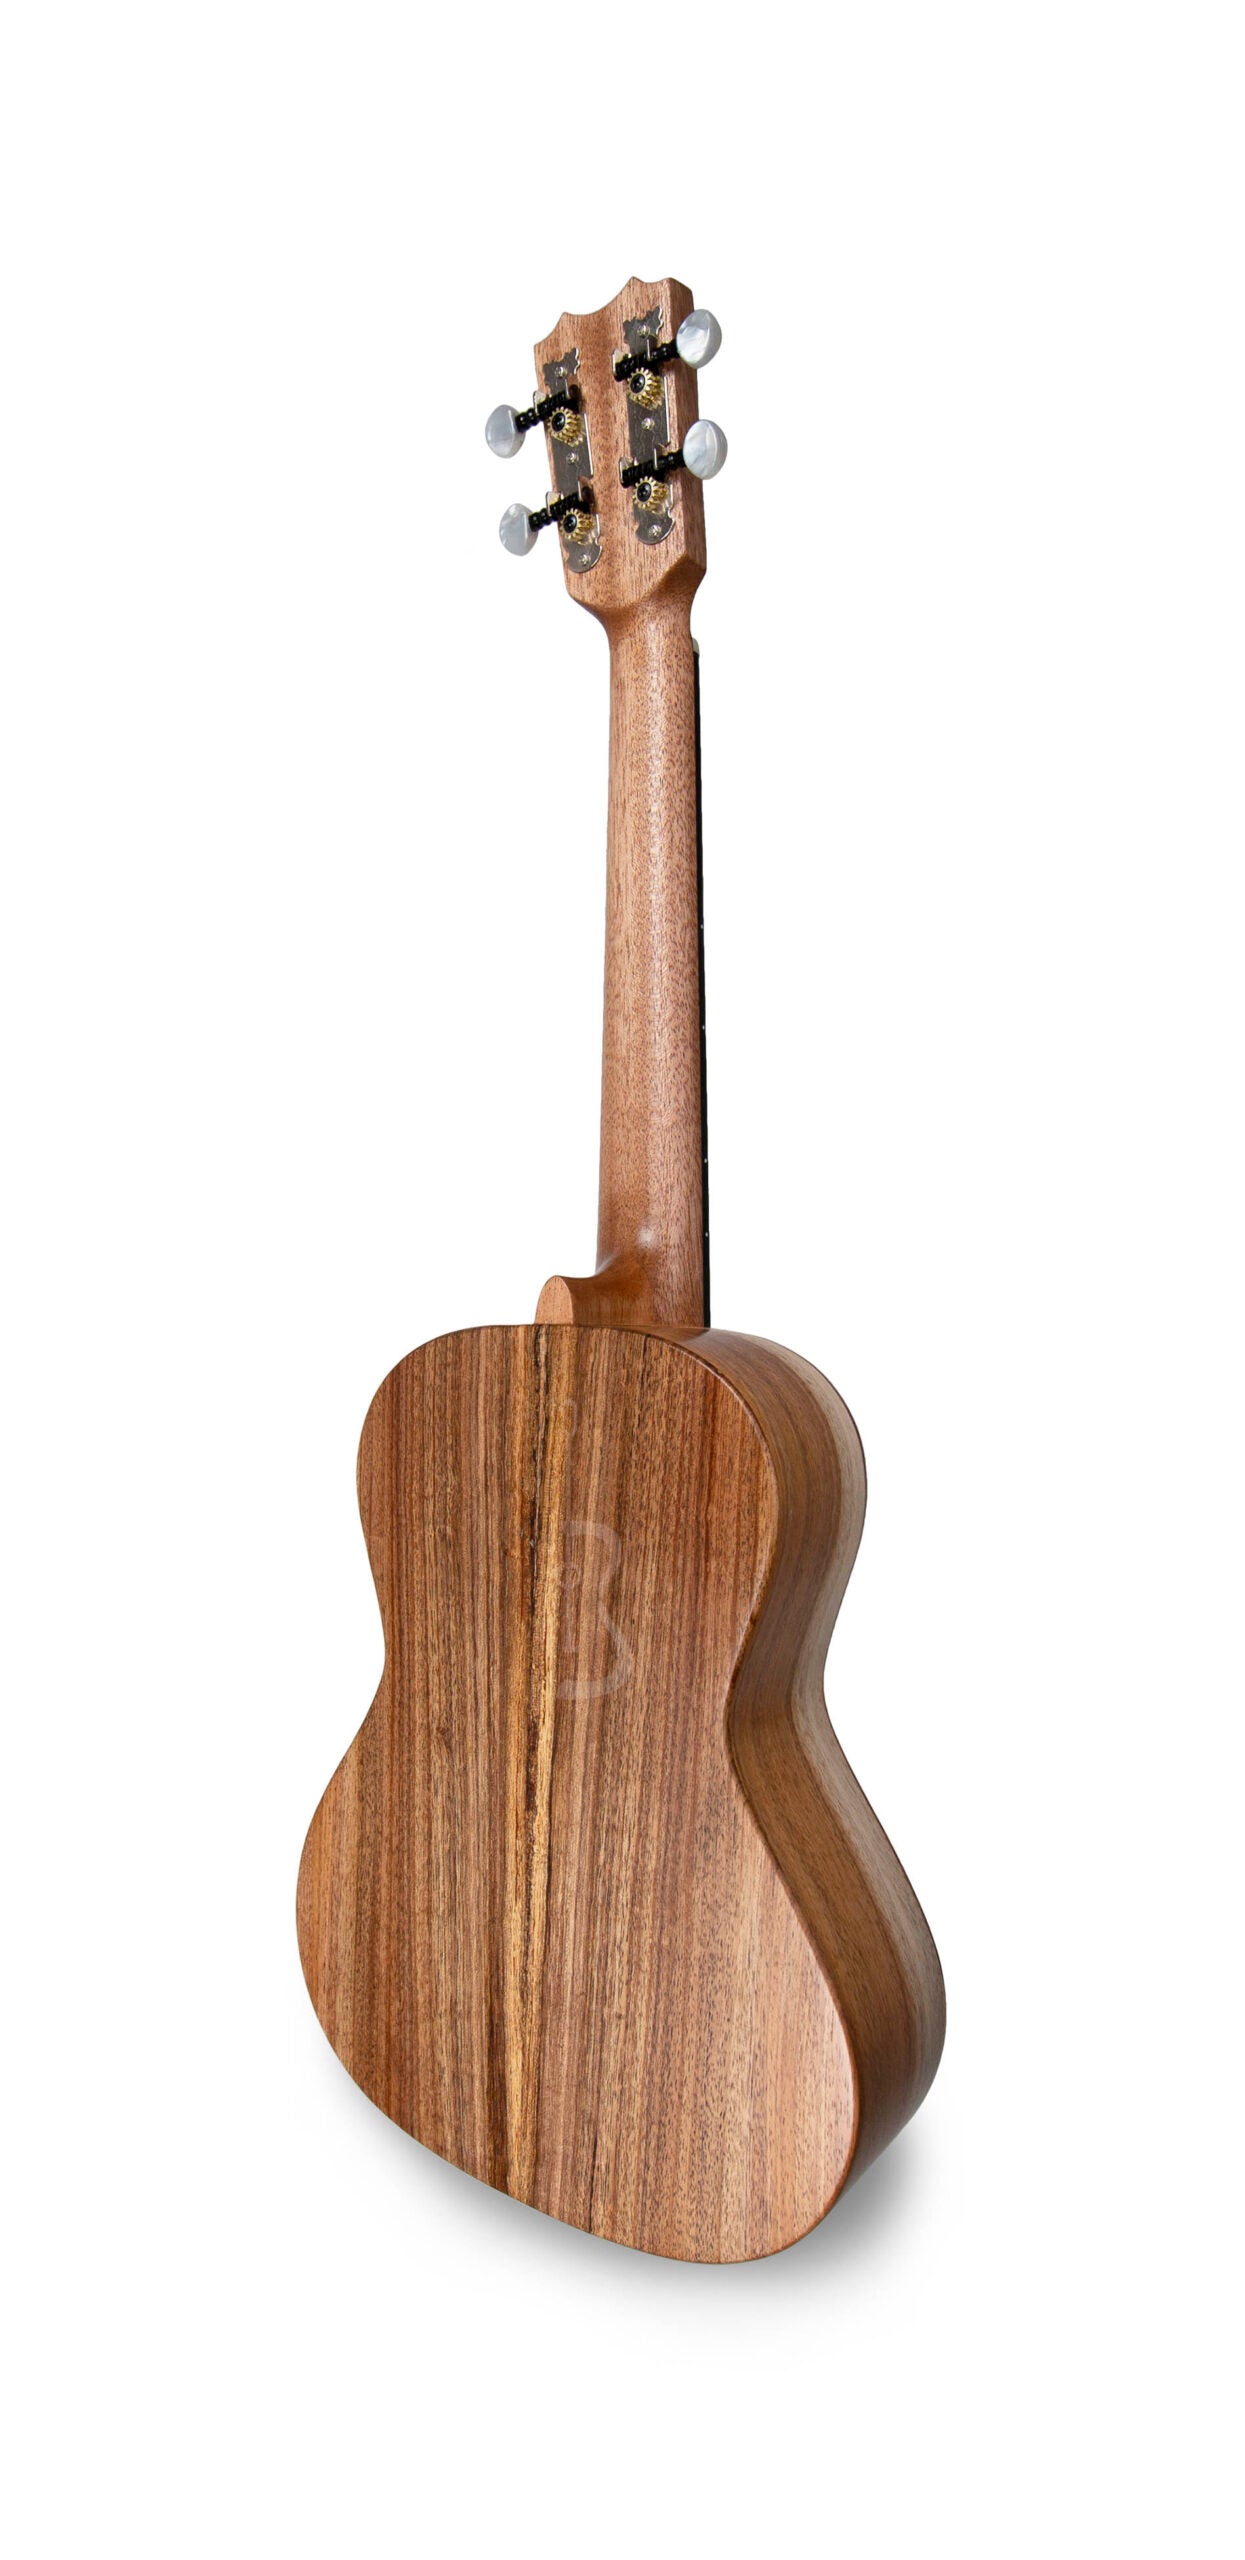 APC TS Tenora izmēra ukulele KOA (GCEA skaņojums)